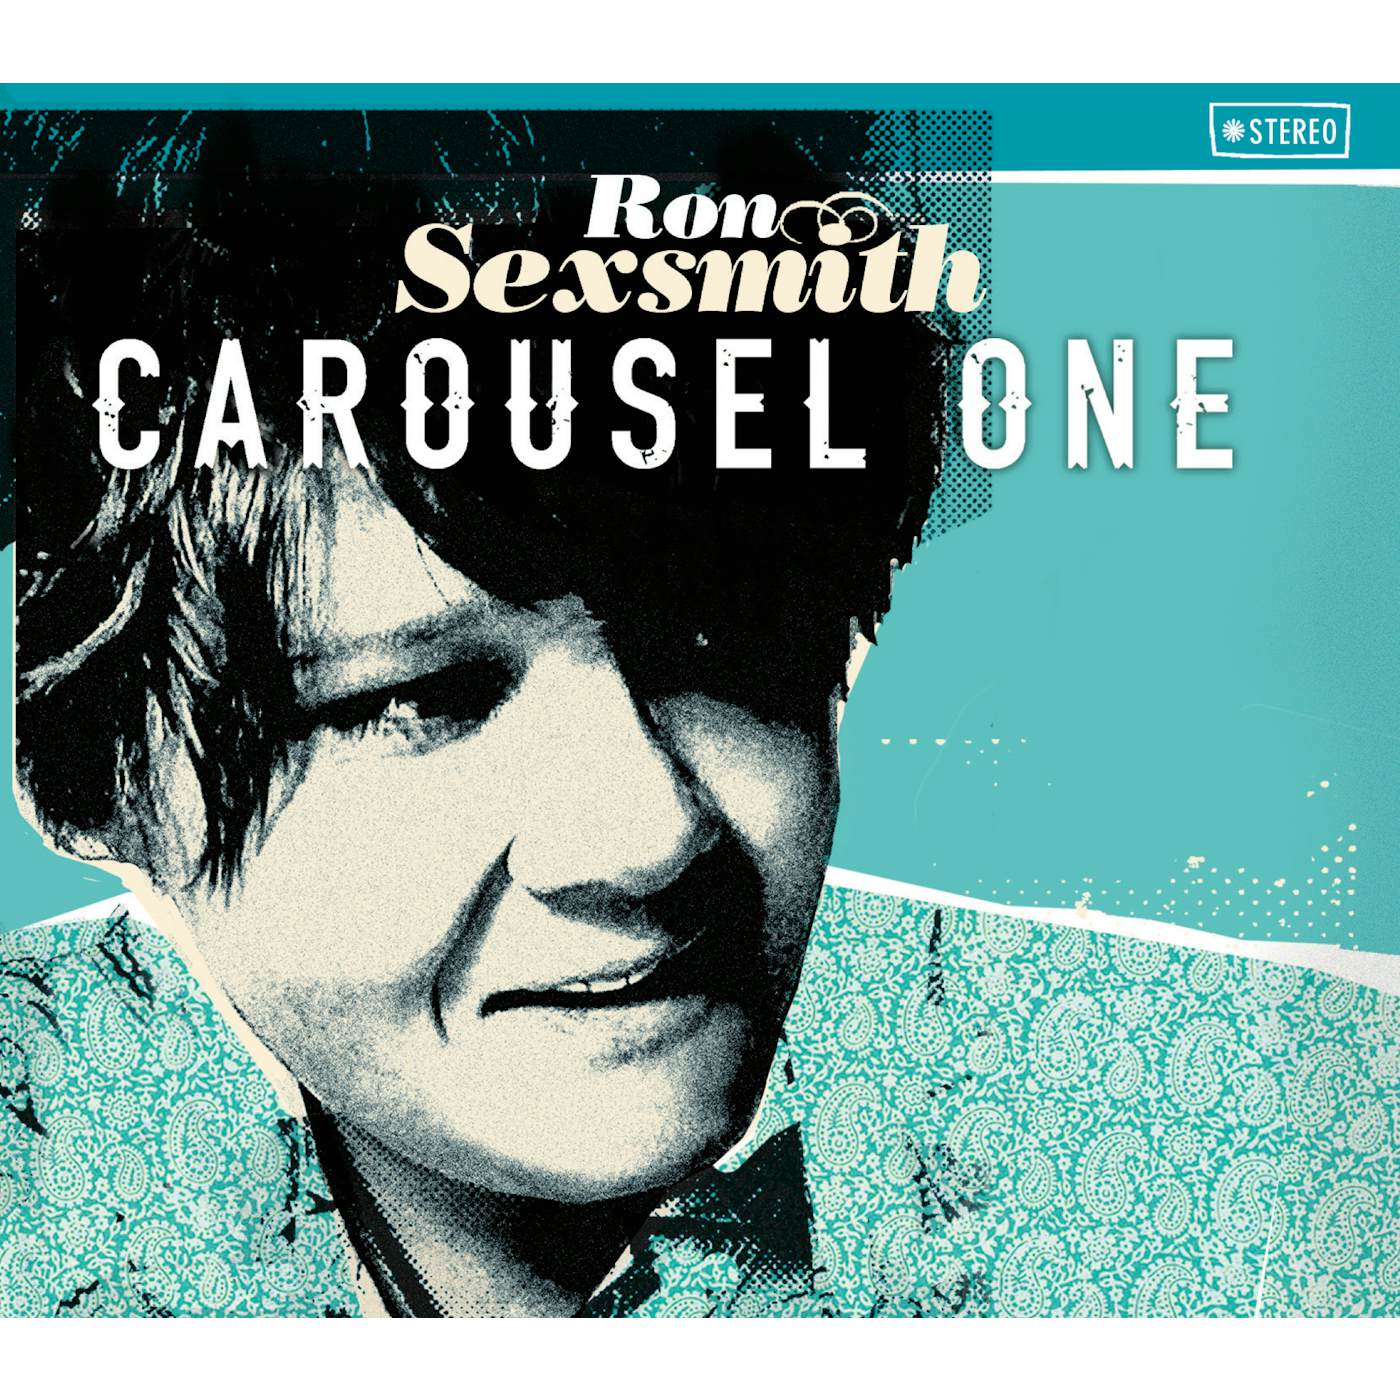 Ron Sexsmith Carousel One Vinyl Record